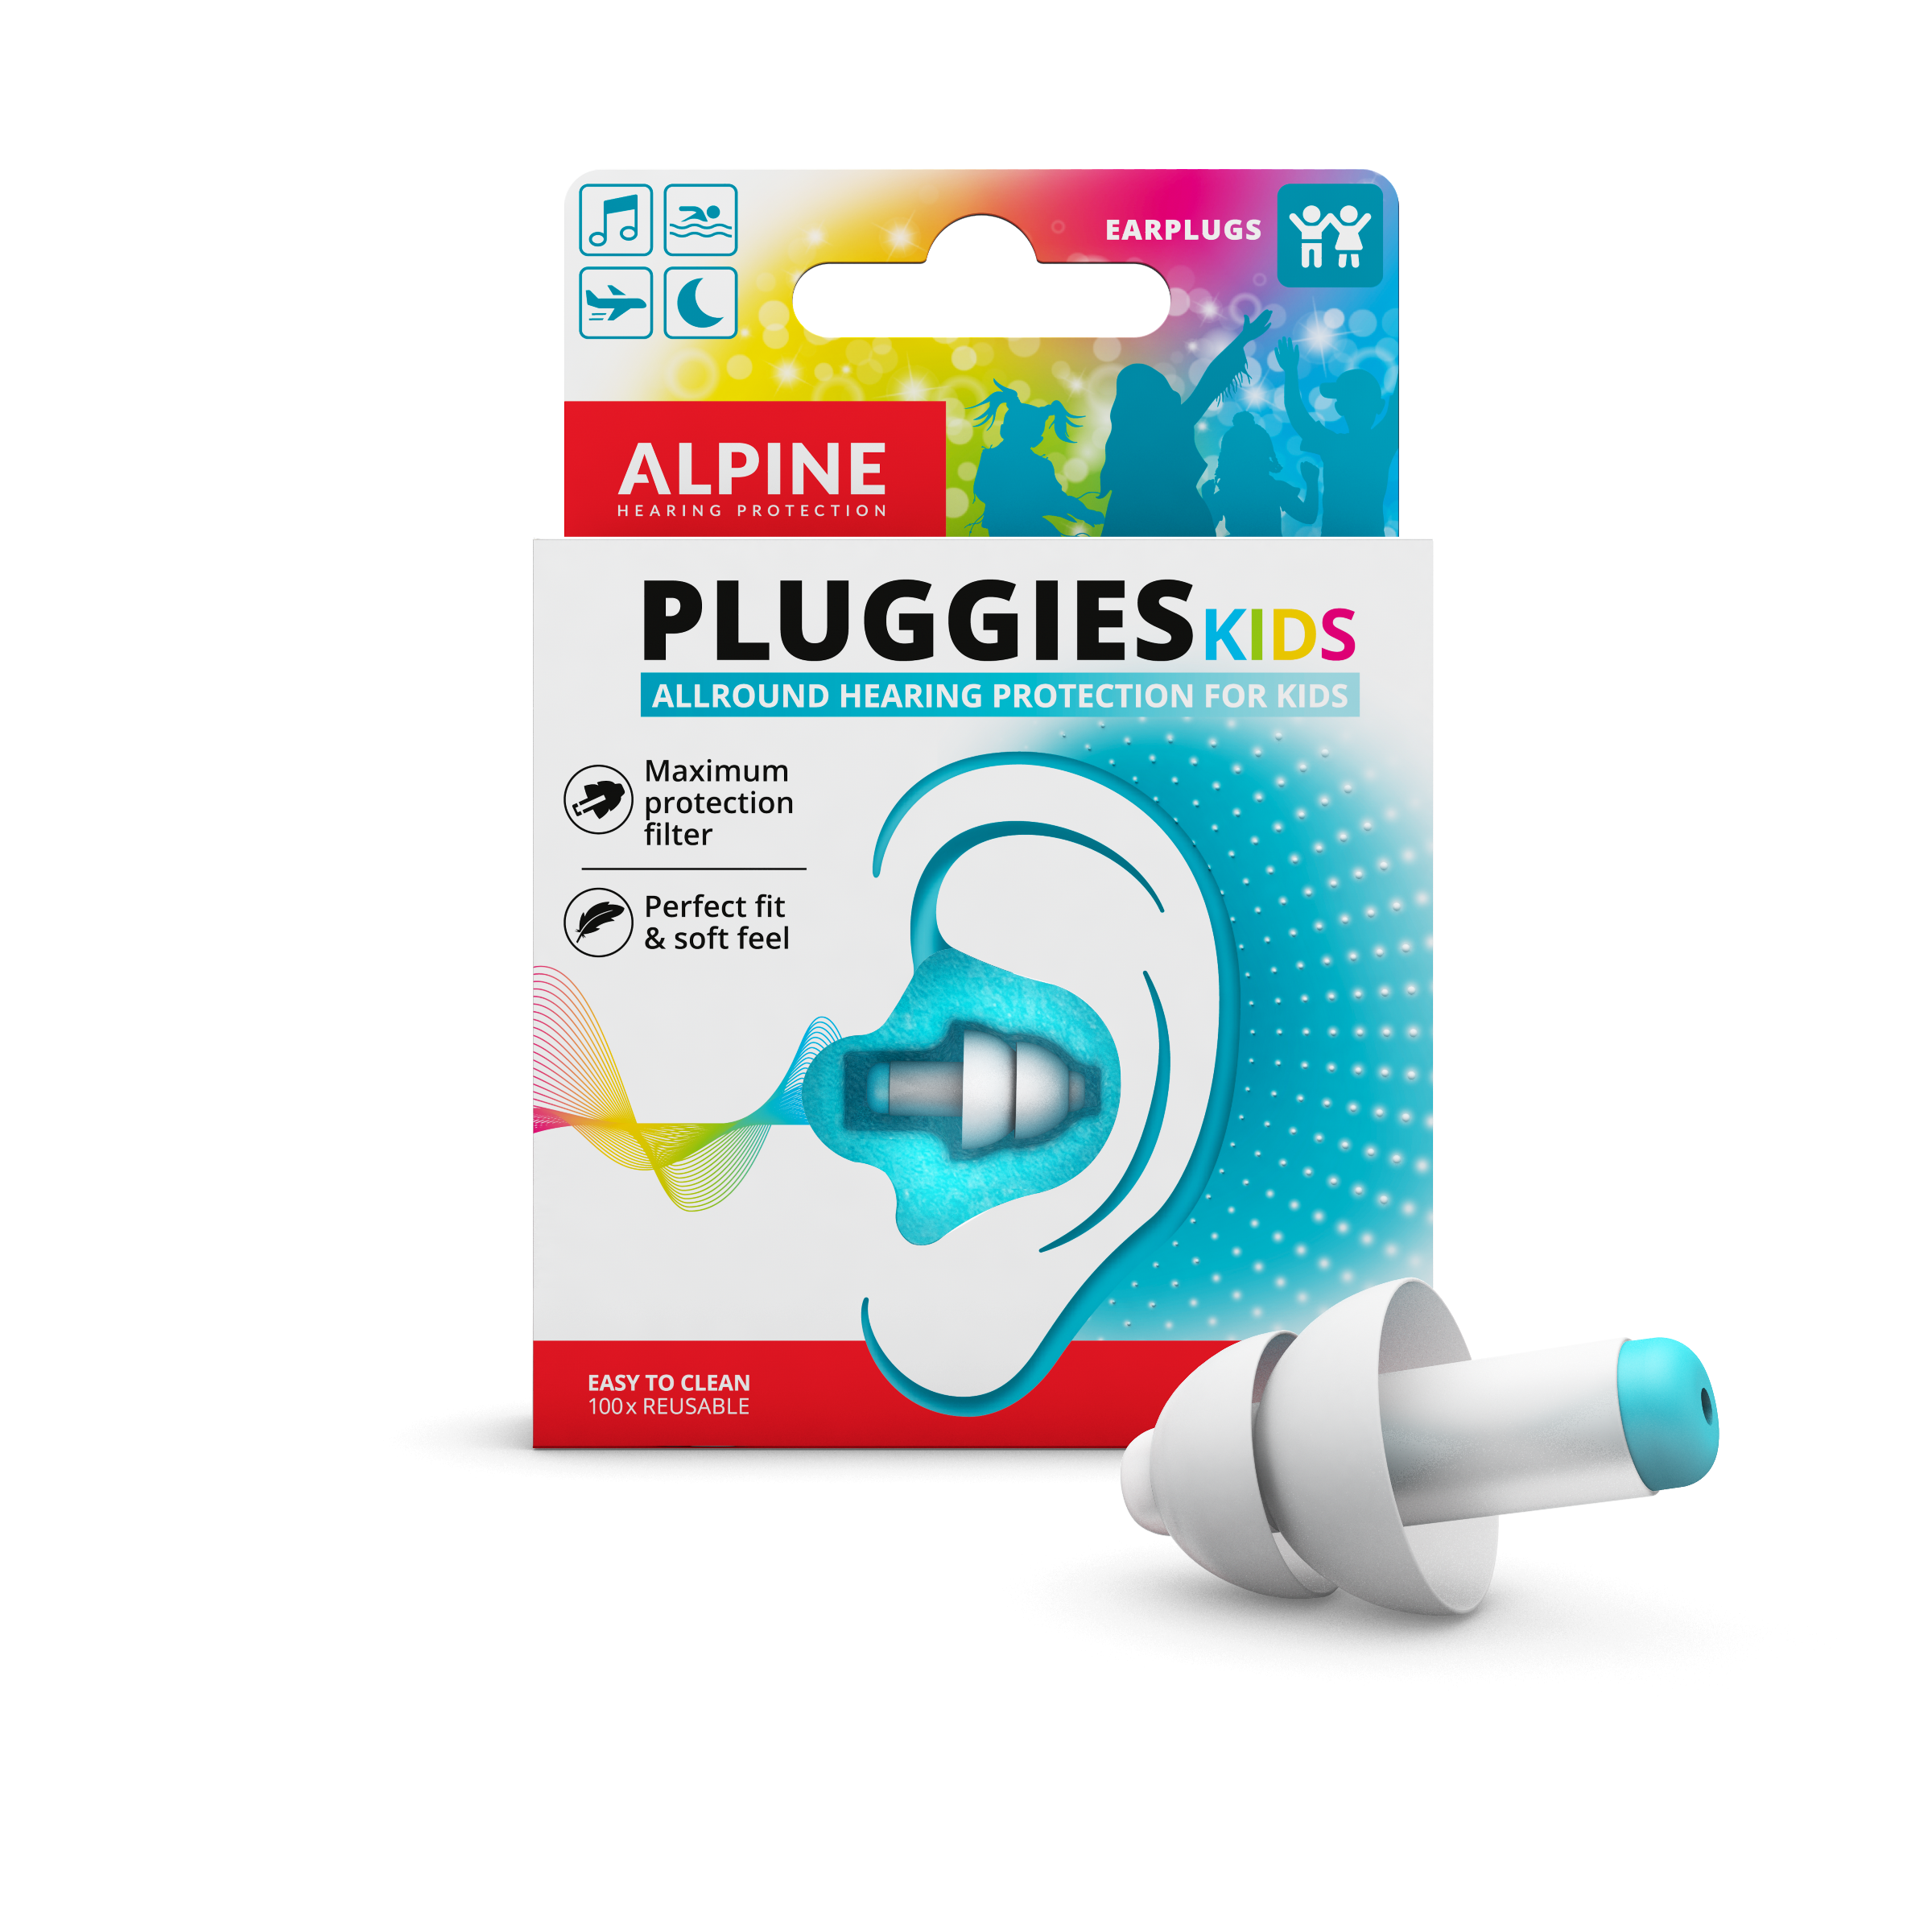 Pluggies ørepropper designet specielt til børn.